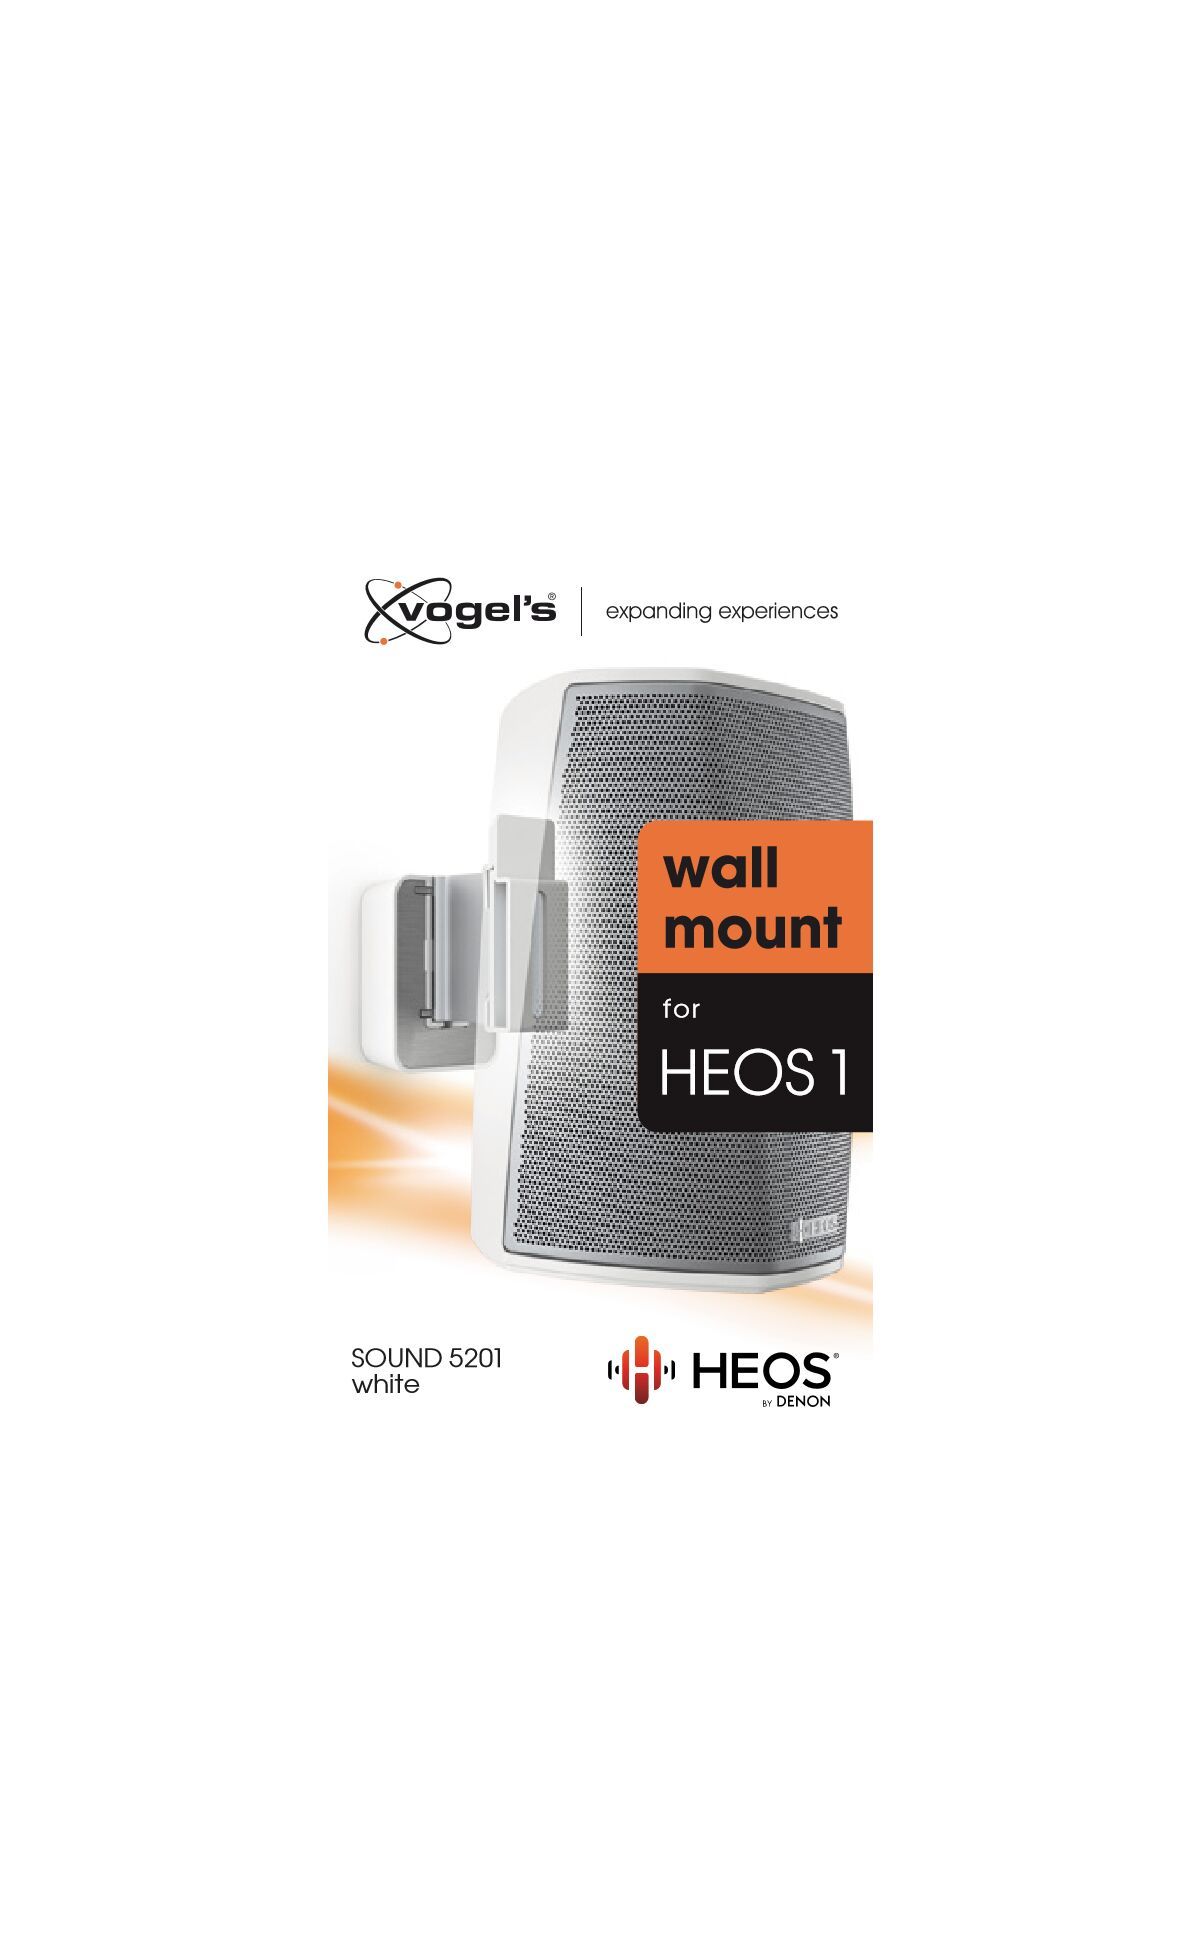 Vogel's SOUND 5201 Lautsprecher Wandhalterung für Denon HEOS 1 (Weiß) - Packaging front